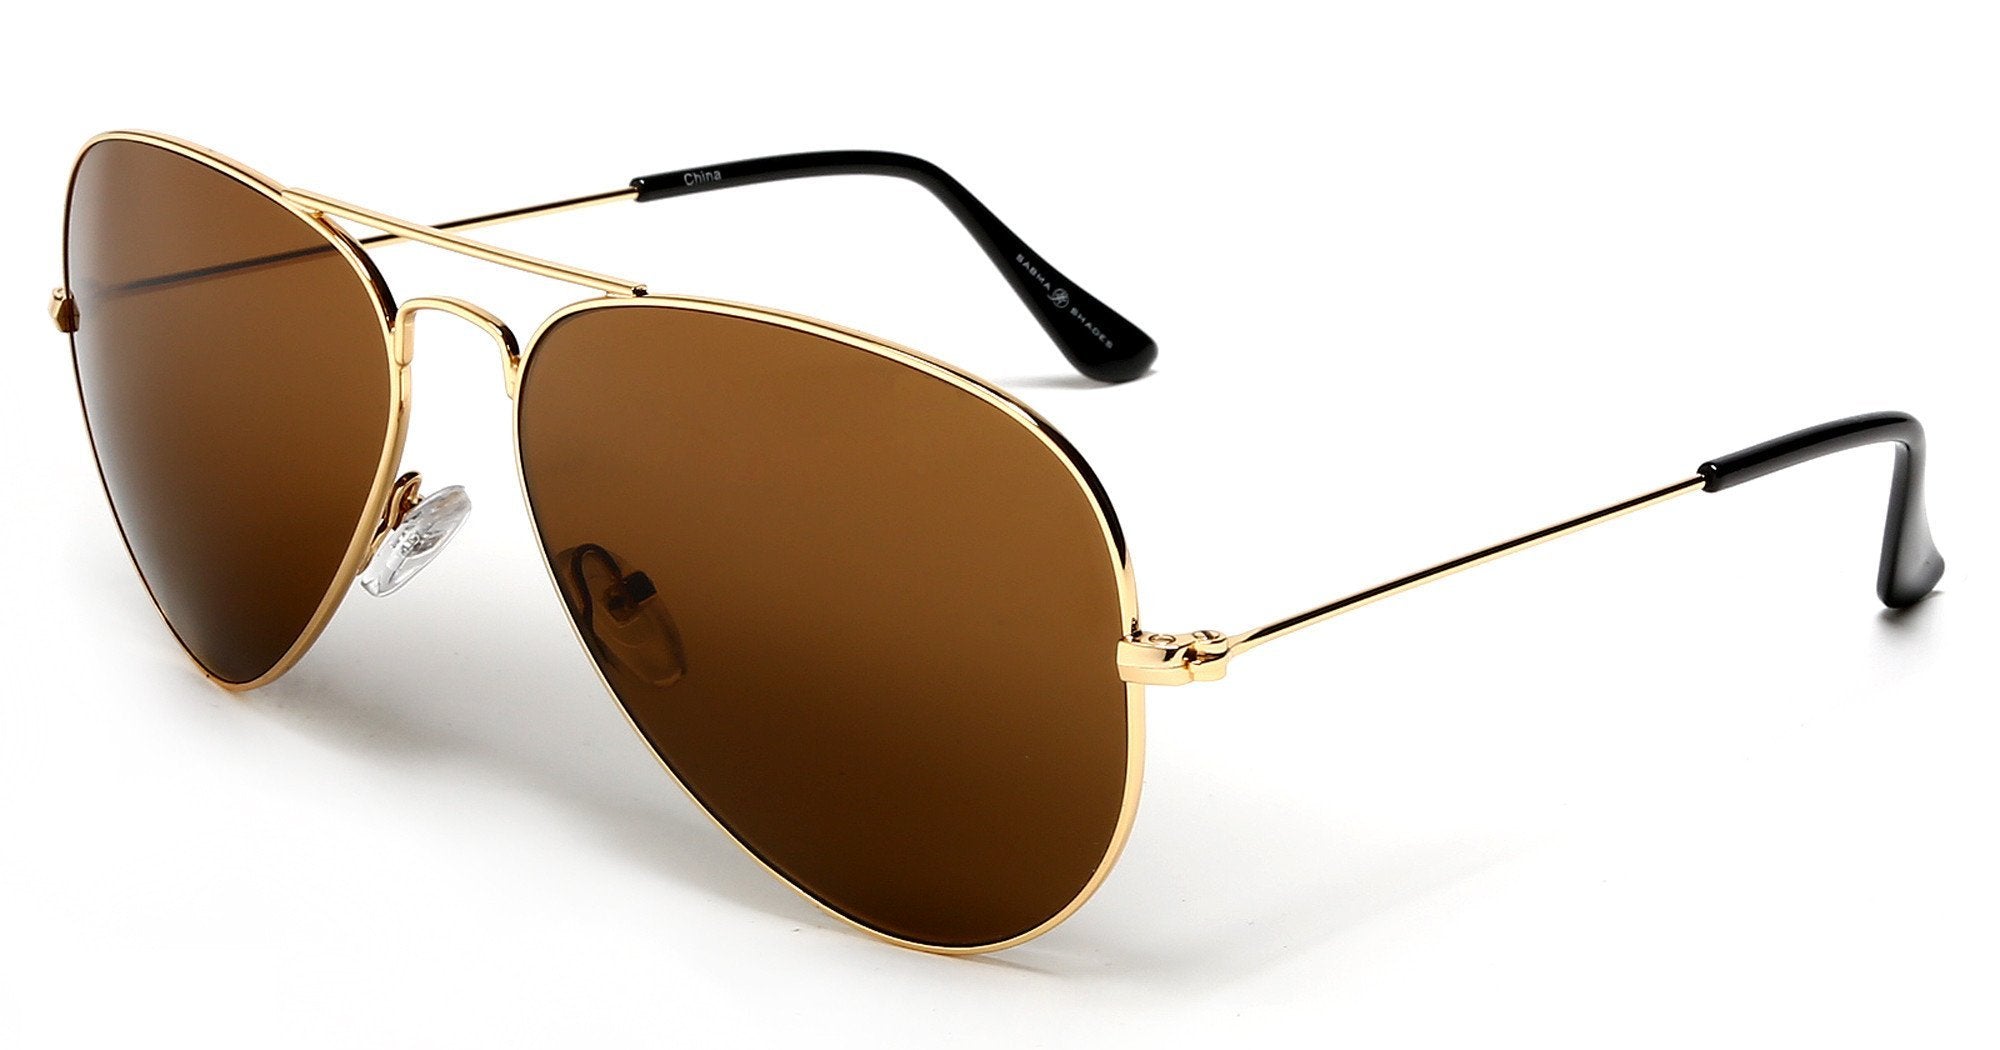 Mens Classic Square Attitude Square Aviator Sunglasses With Gold